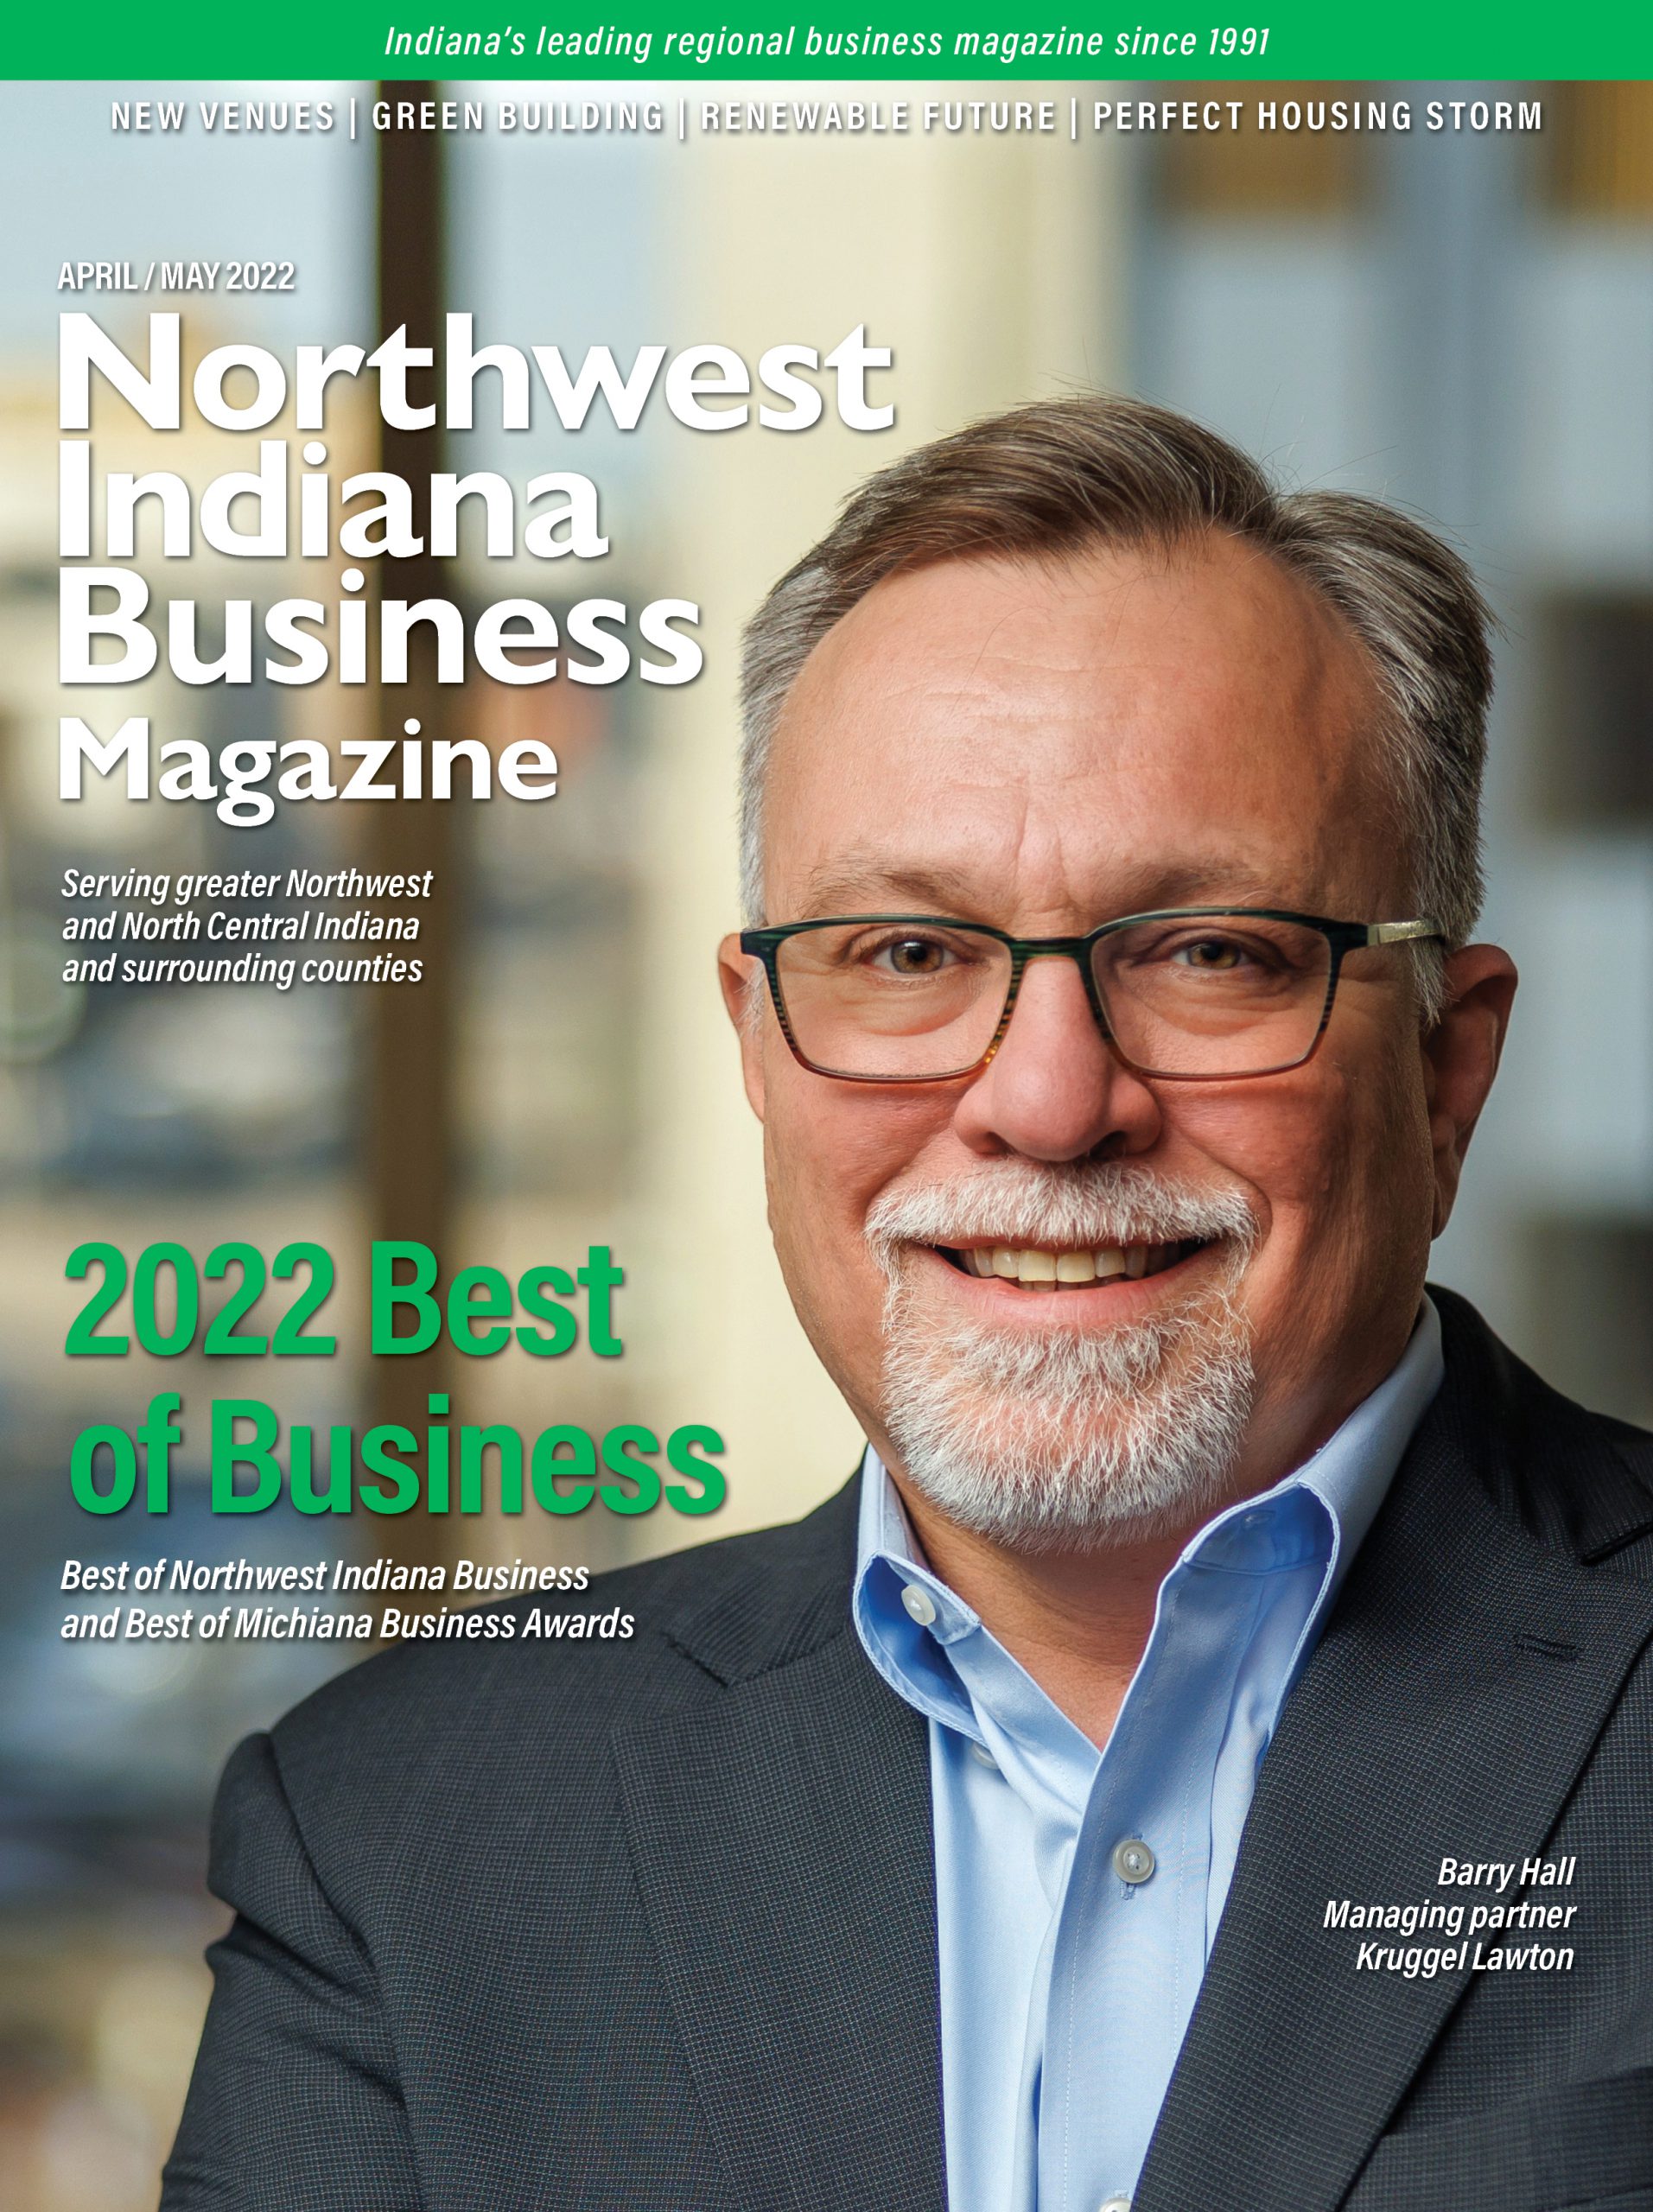 Northwest Indiana Business Magazine Apr-May 2022 issue